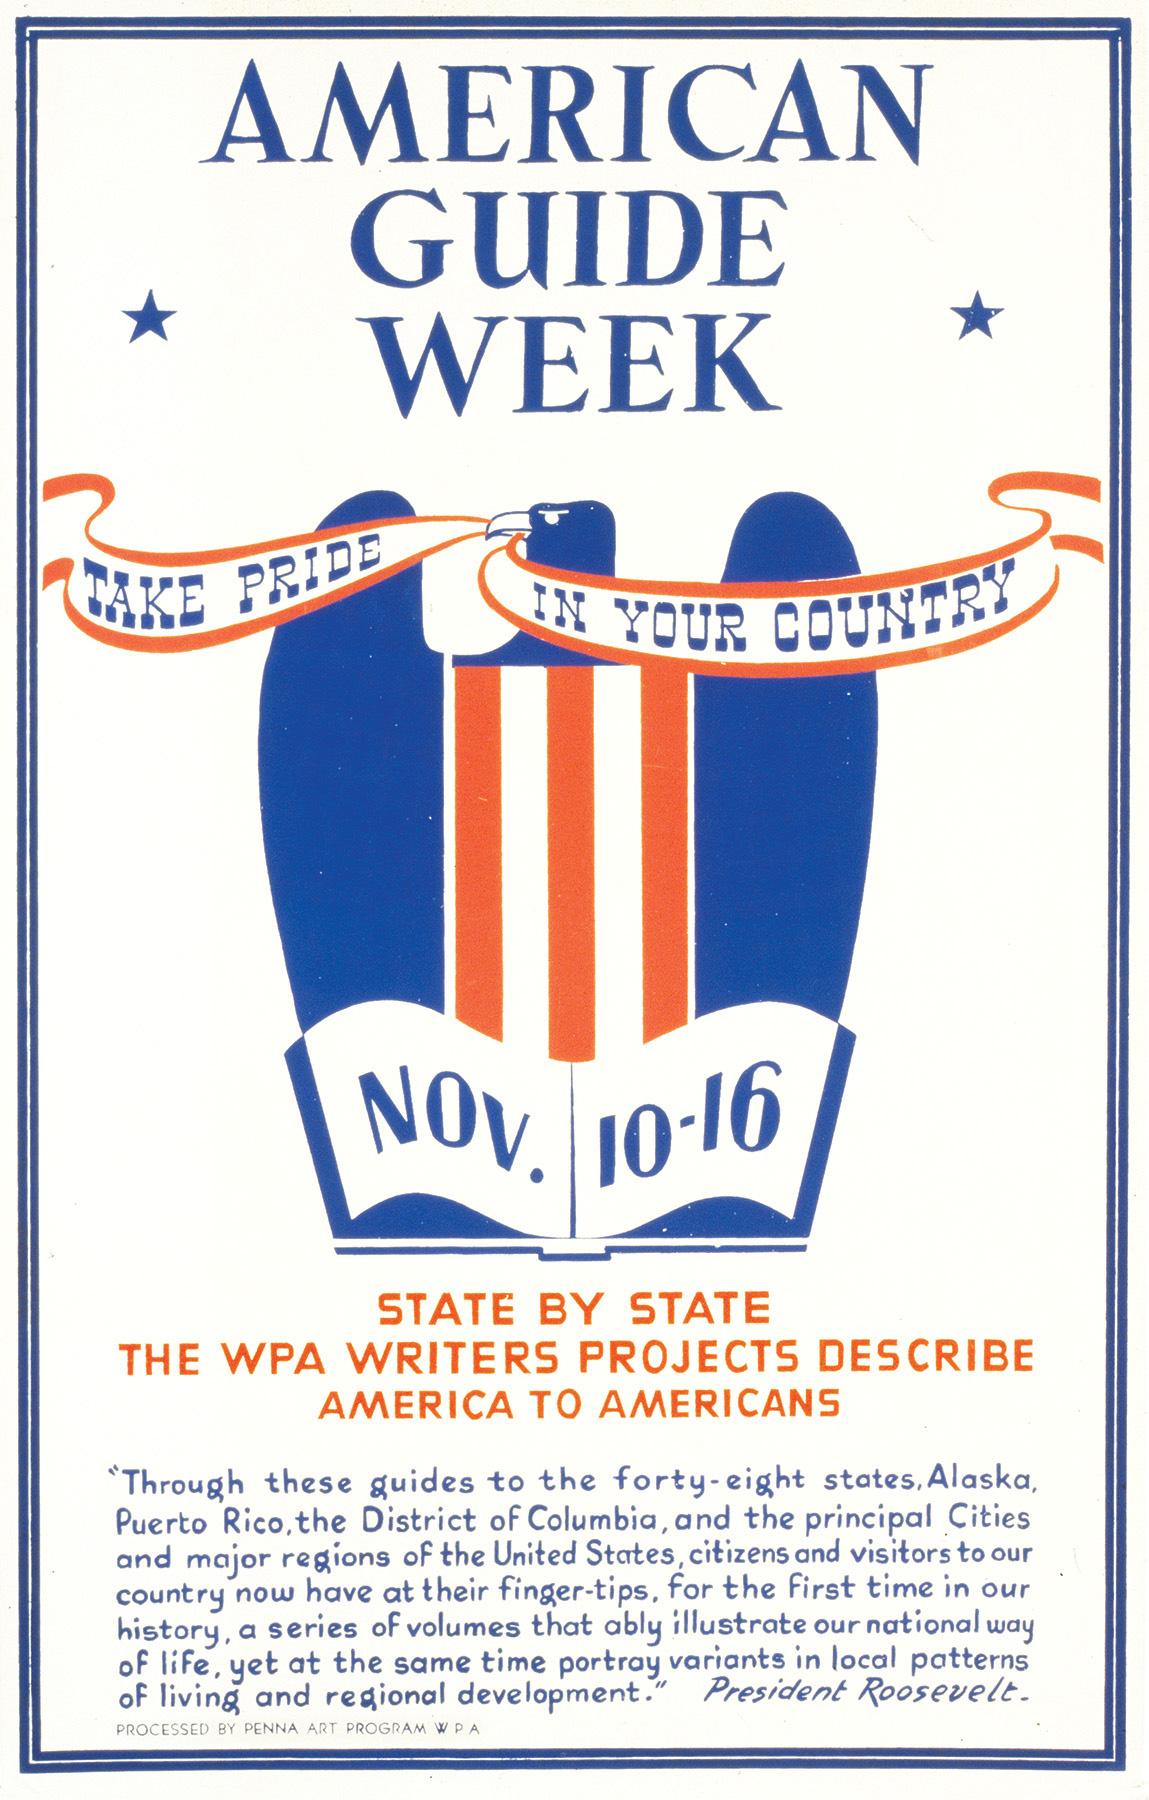 American Guide Week poster